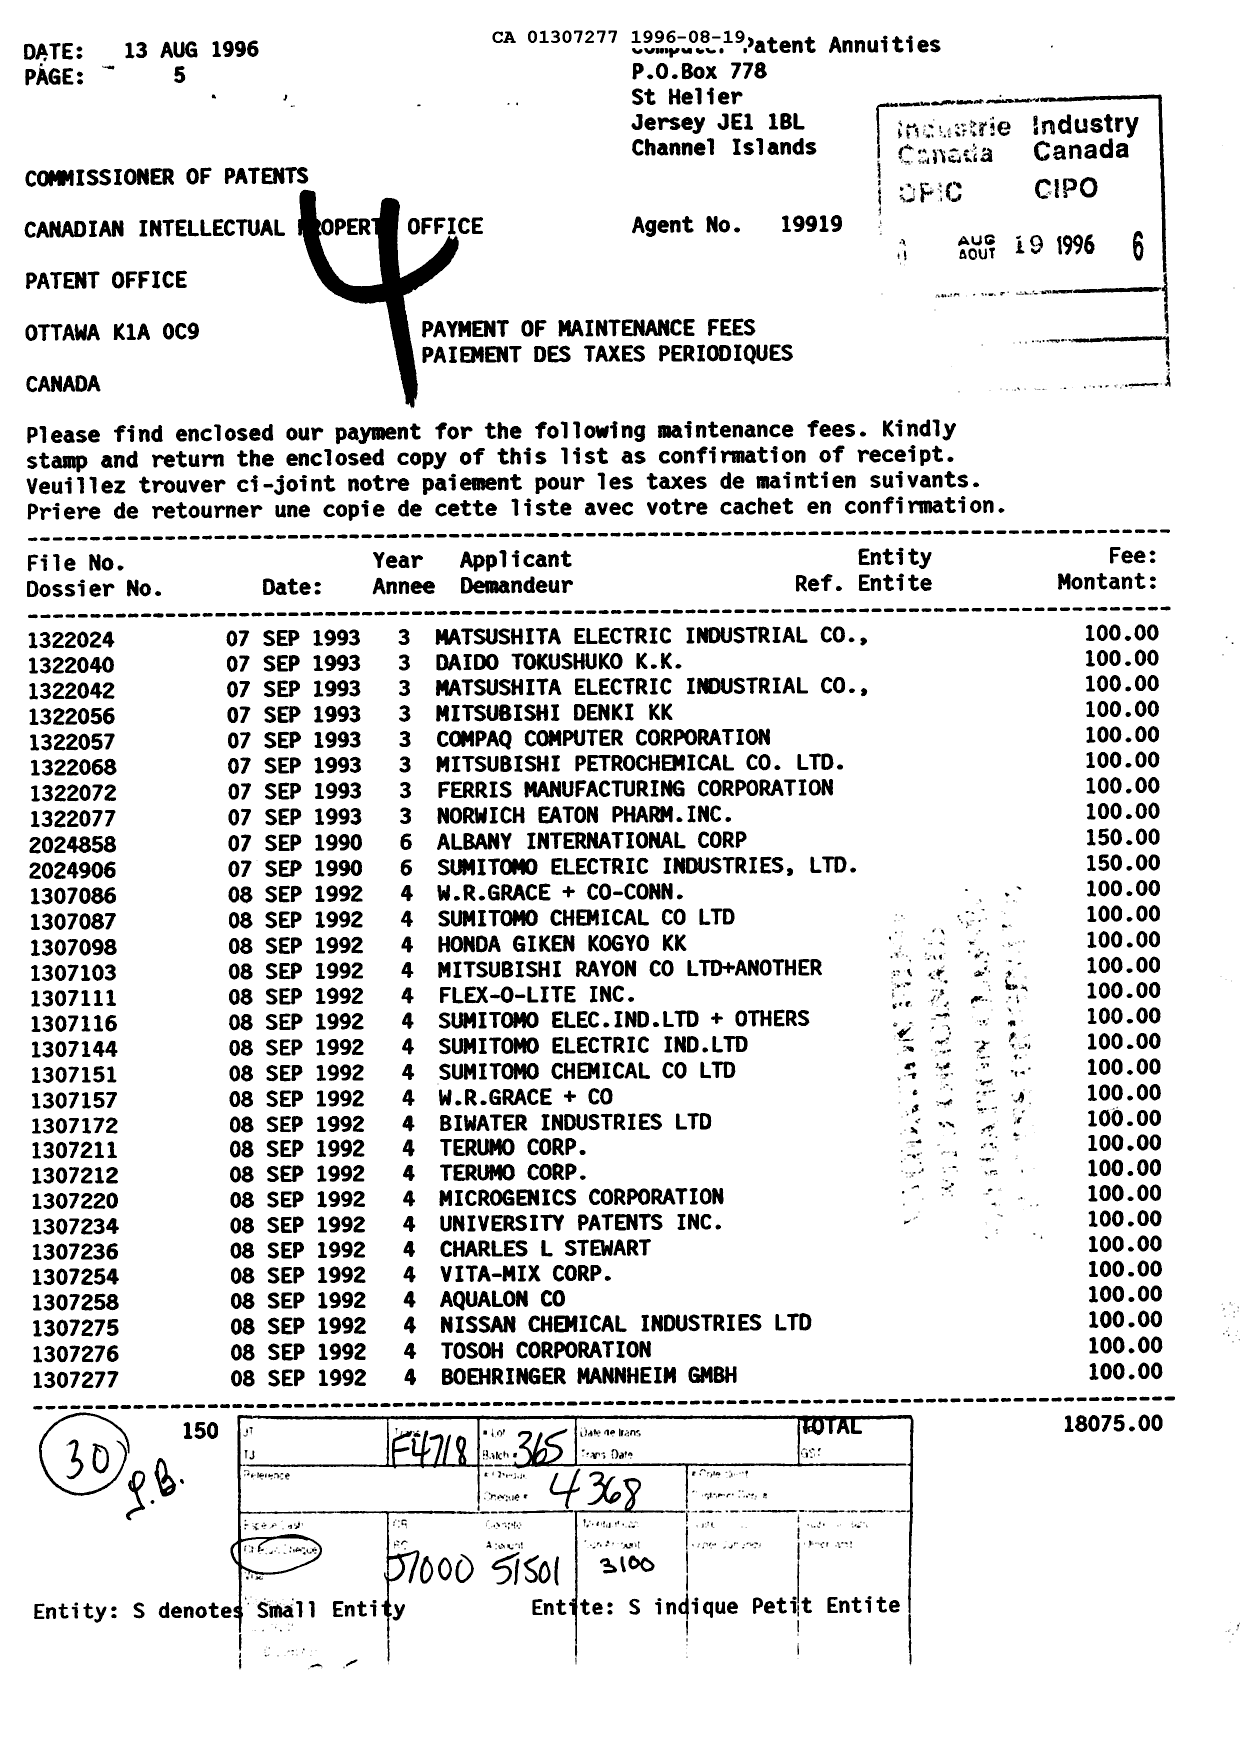 Document de brevet canadien 1307277. Taxes 19960819. Image 1 de 1